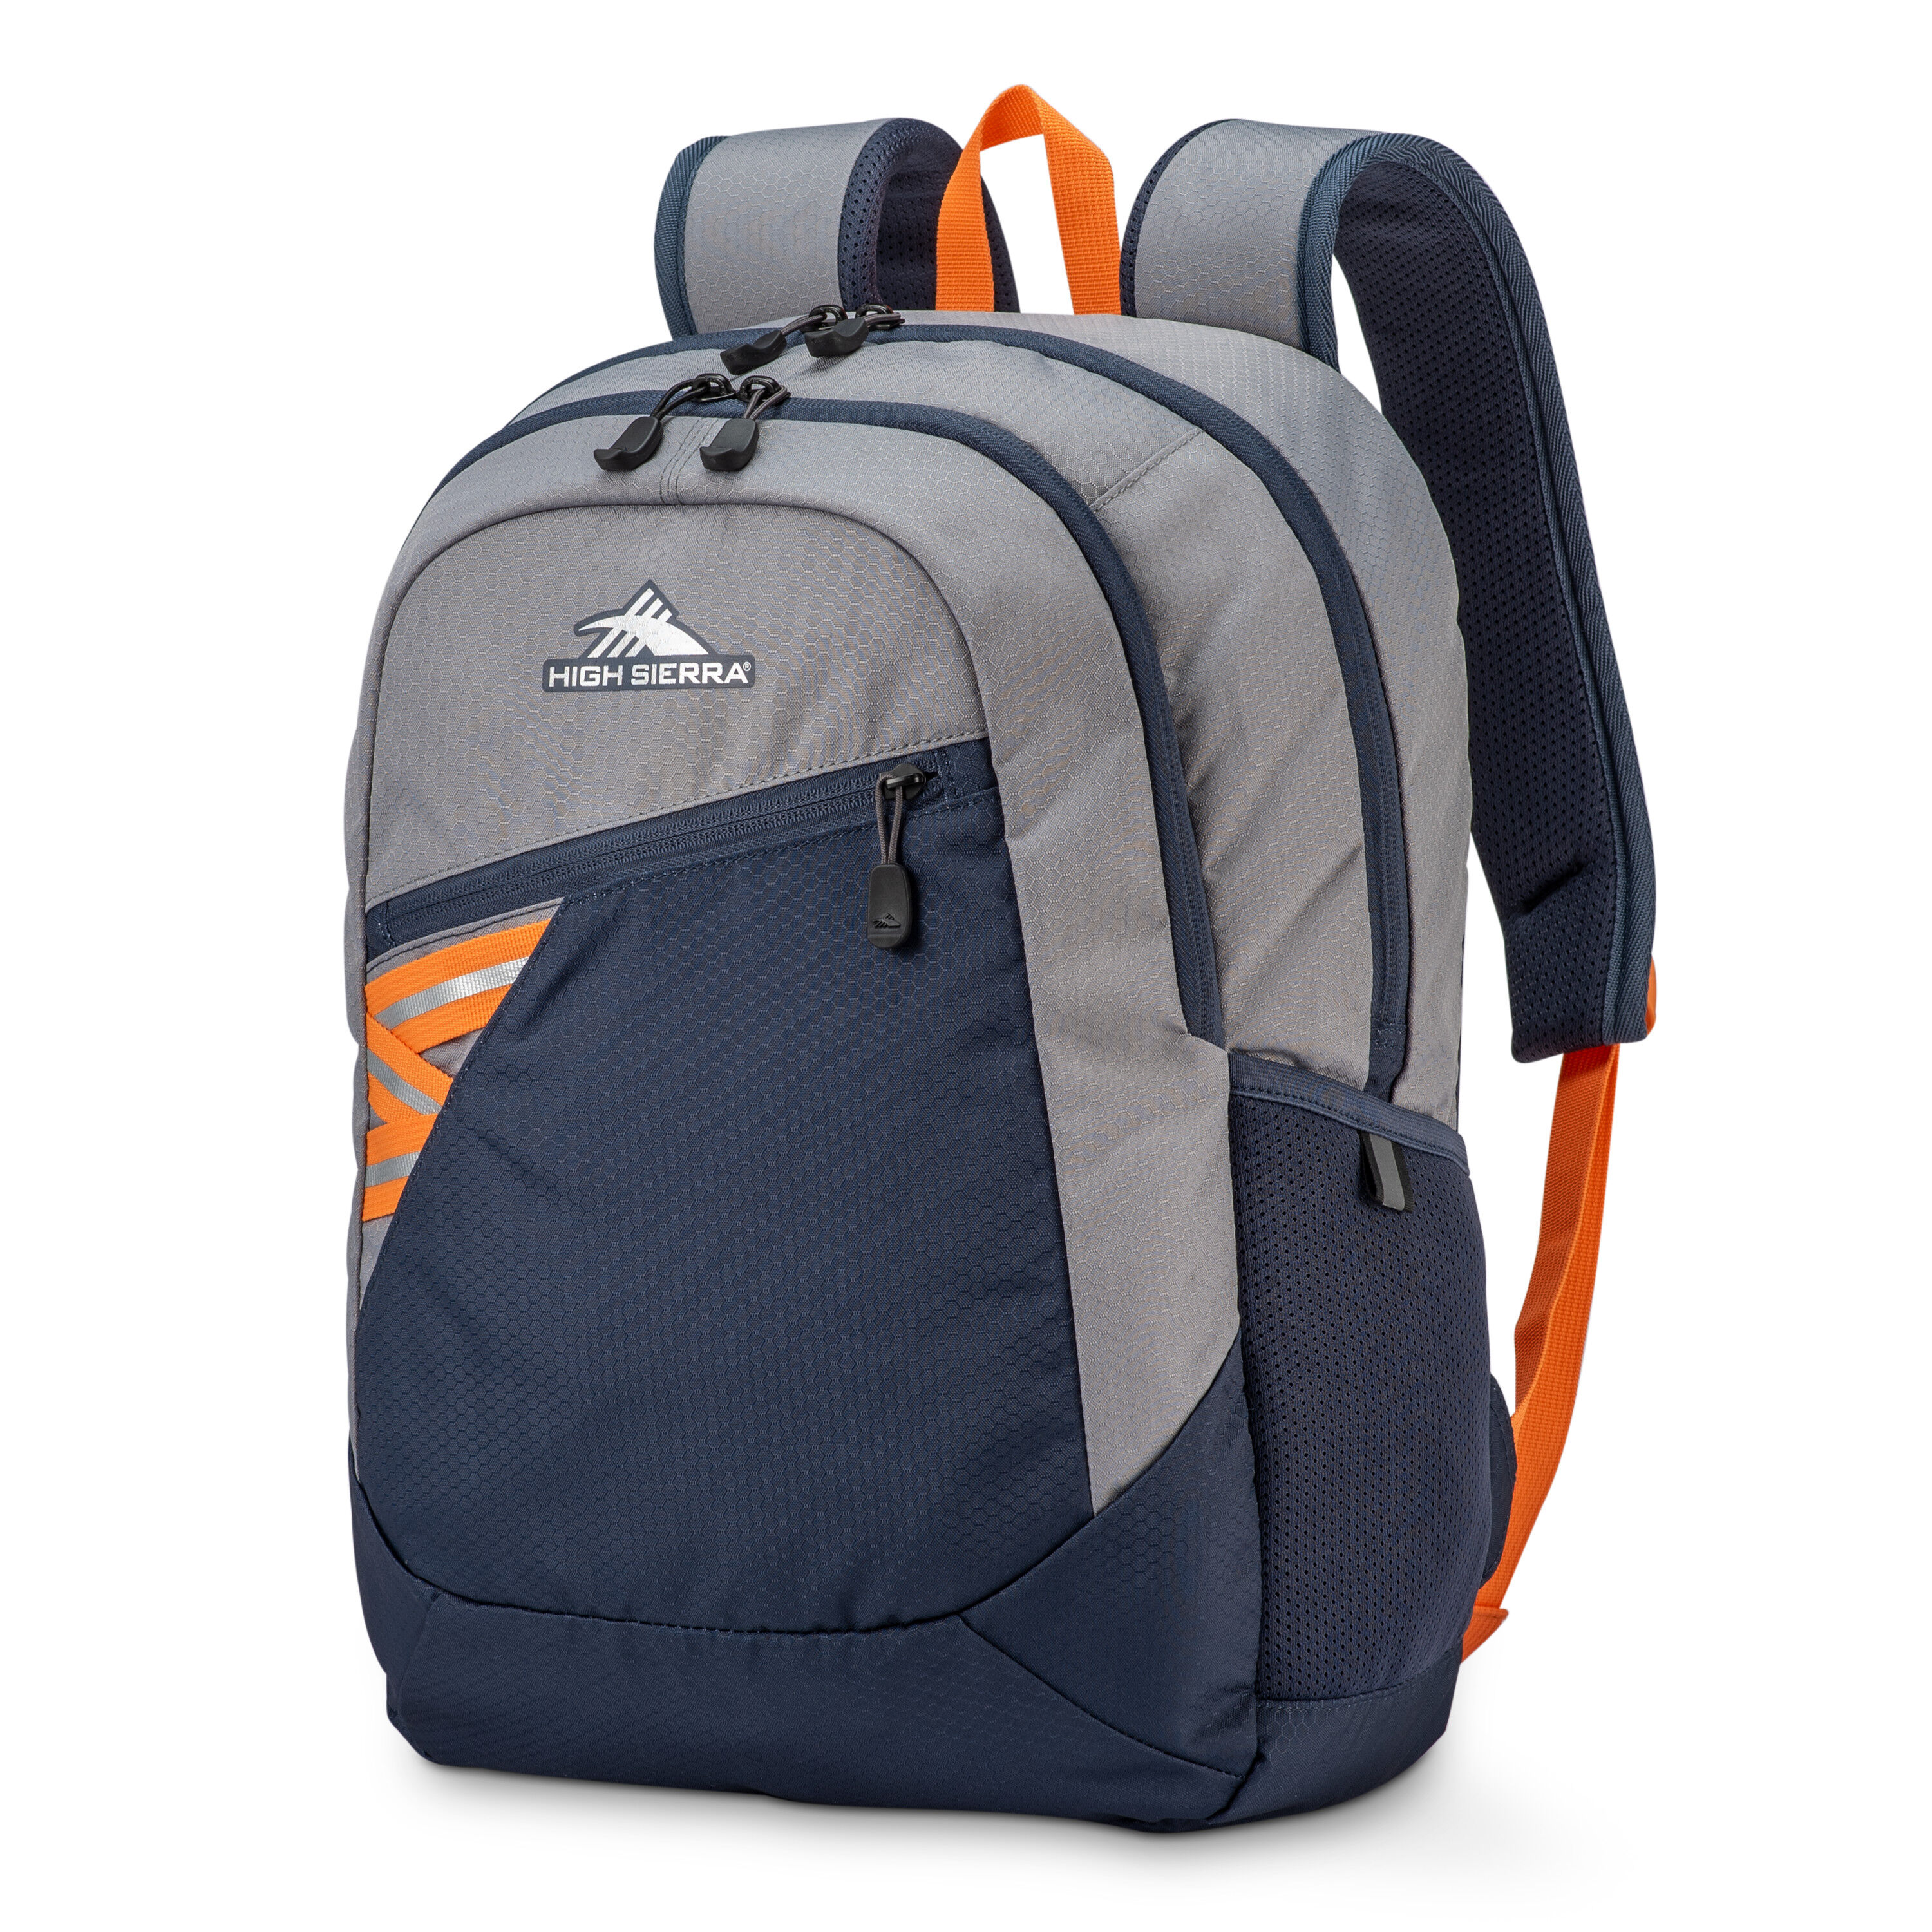 Buy Outburst 2.0 Backpack for USD 20.99 | High Sierra